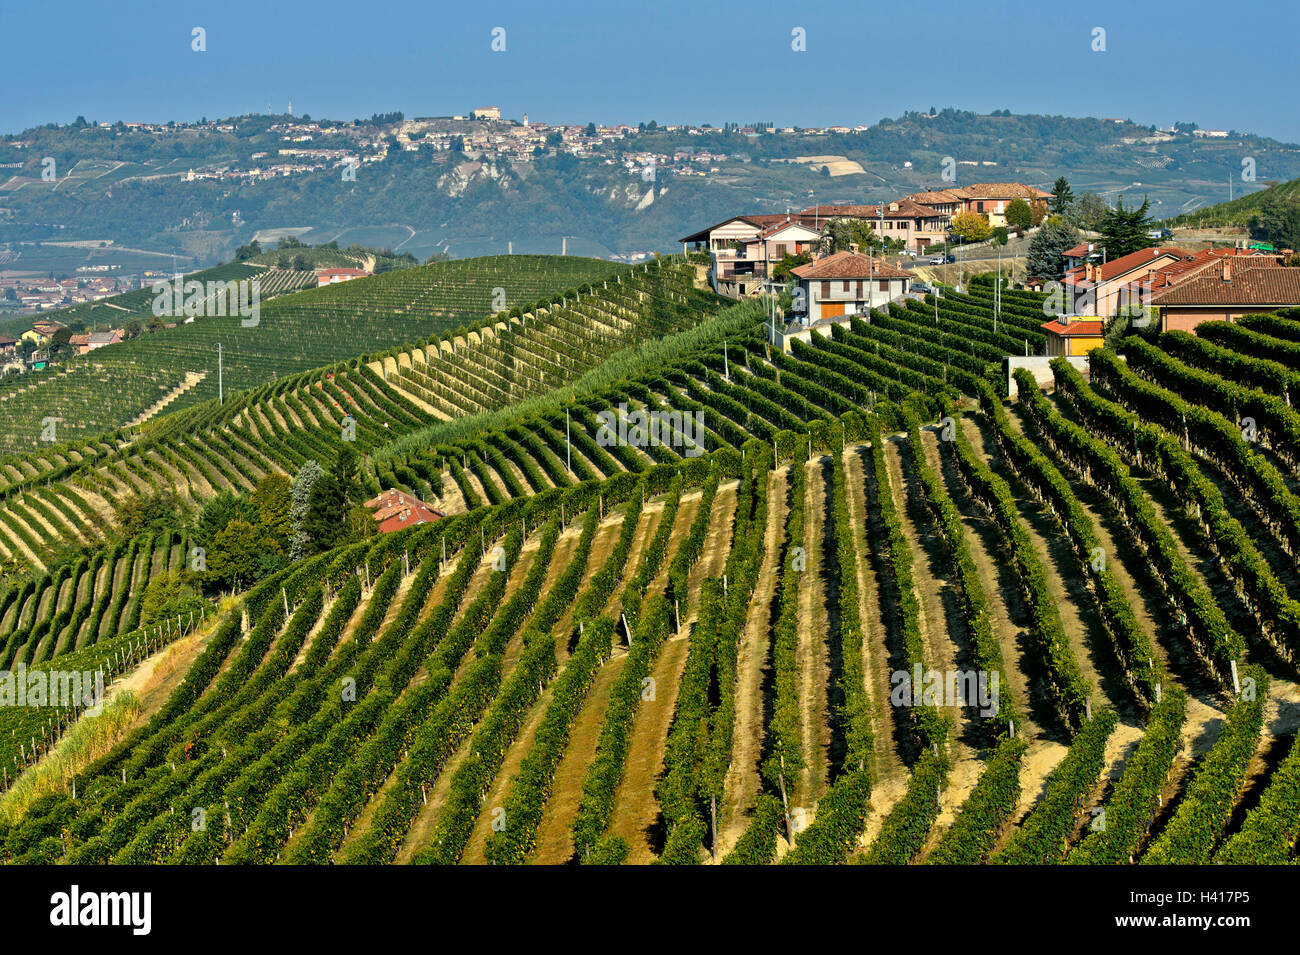 Vigneti di uve Nebbiolo per vino Barbaresco su colline, Treiso, Piemonte, Italia Foto Stock